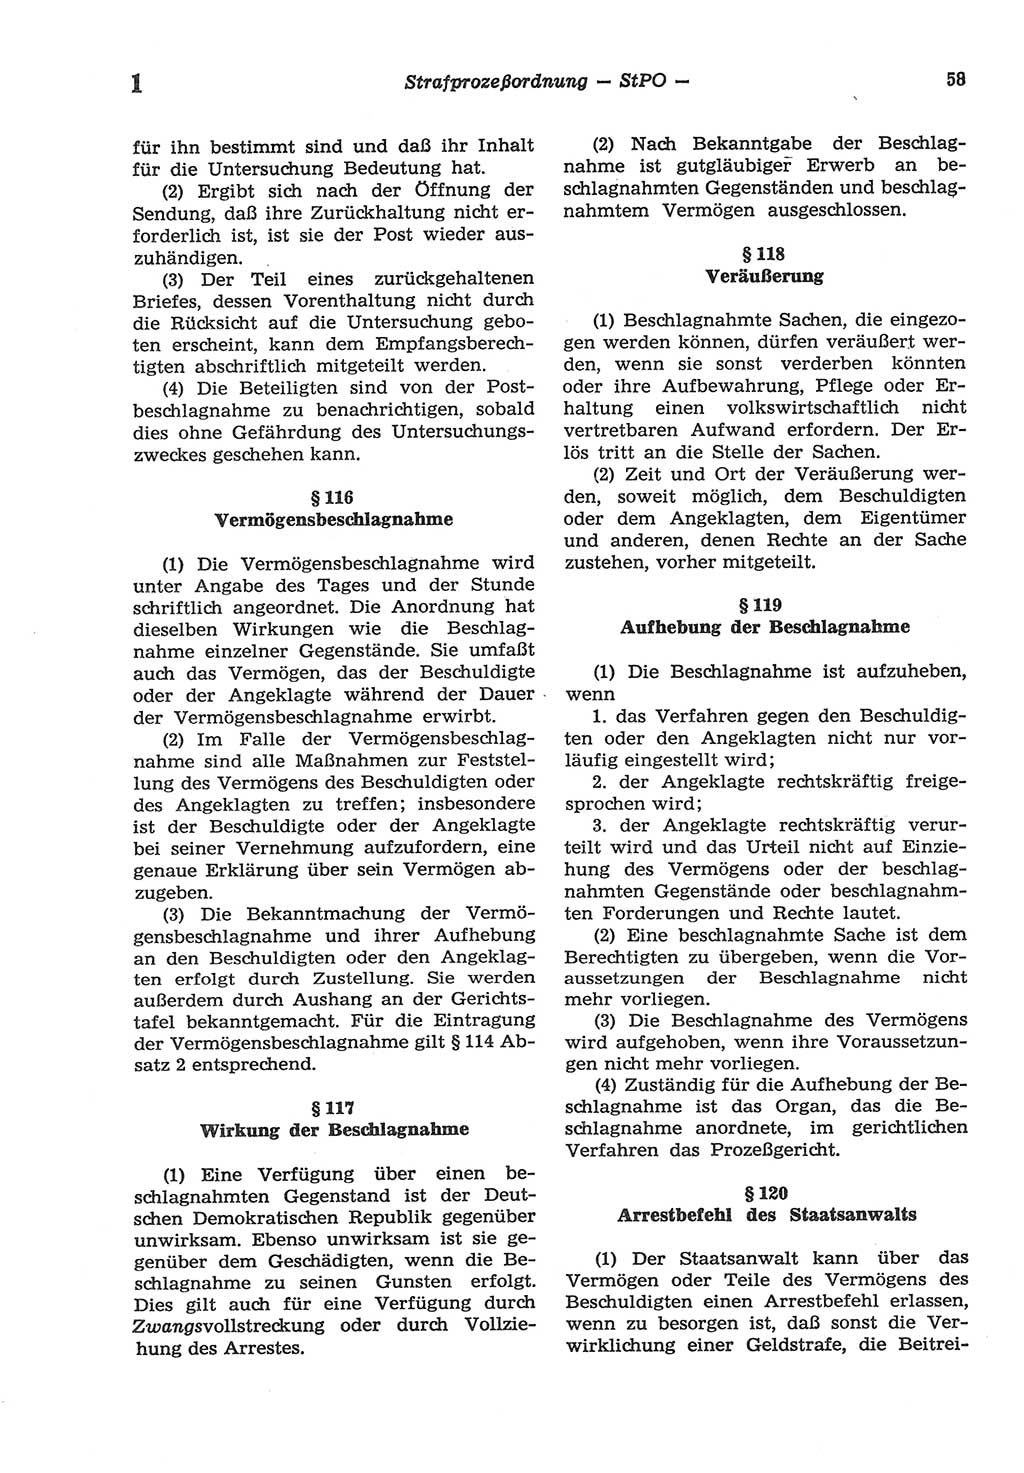 Strafprozeßordnung (StPO) der Deutschen Demokratischen Republik (DDR) sowie angrenzende Gesetze und Bestimmungen 1977, Seite 58 (StPO DDR Ges. Best. 1977, S. 58)